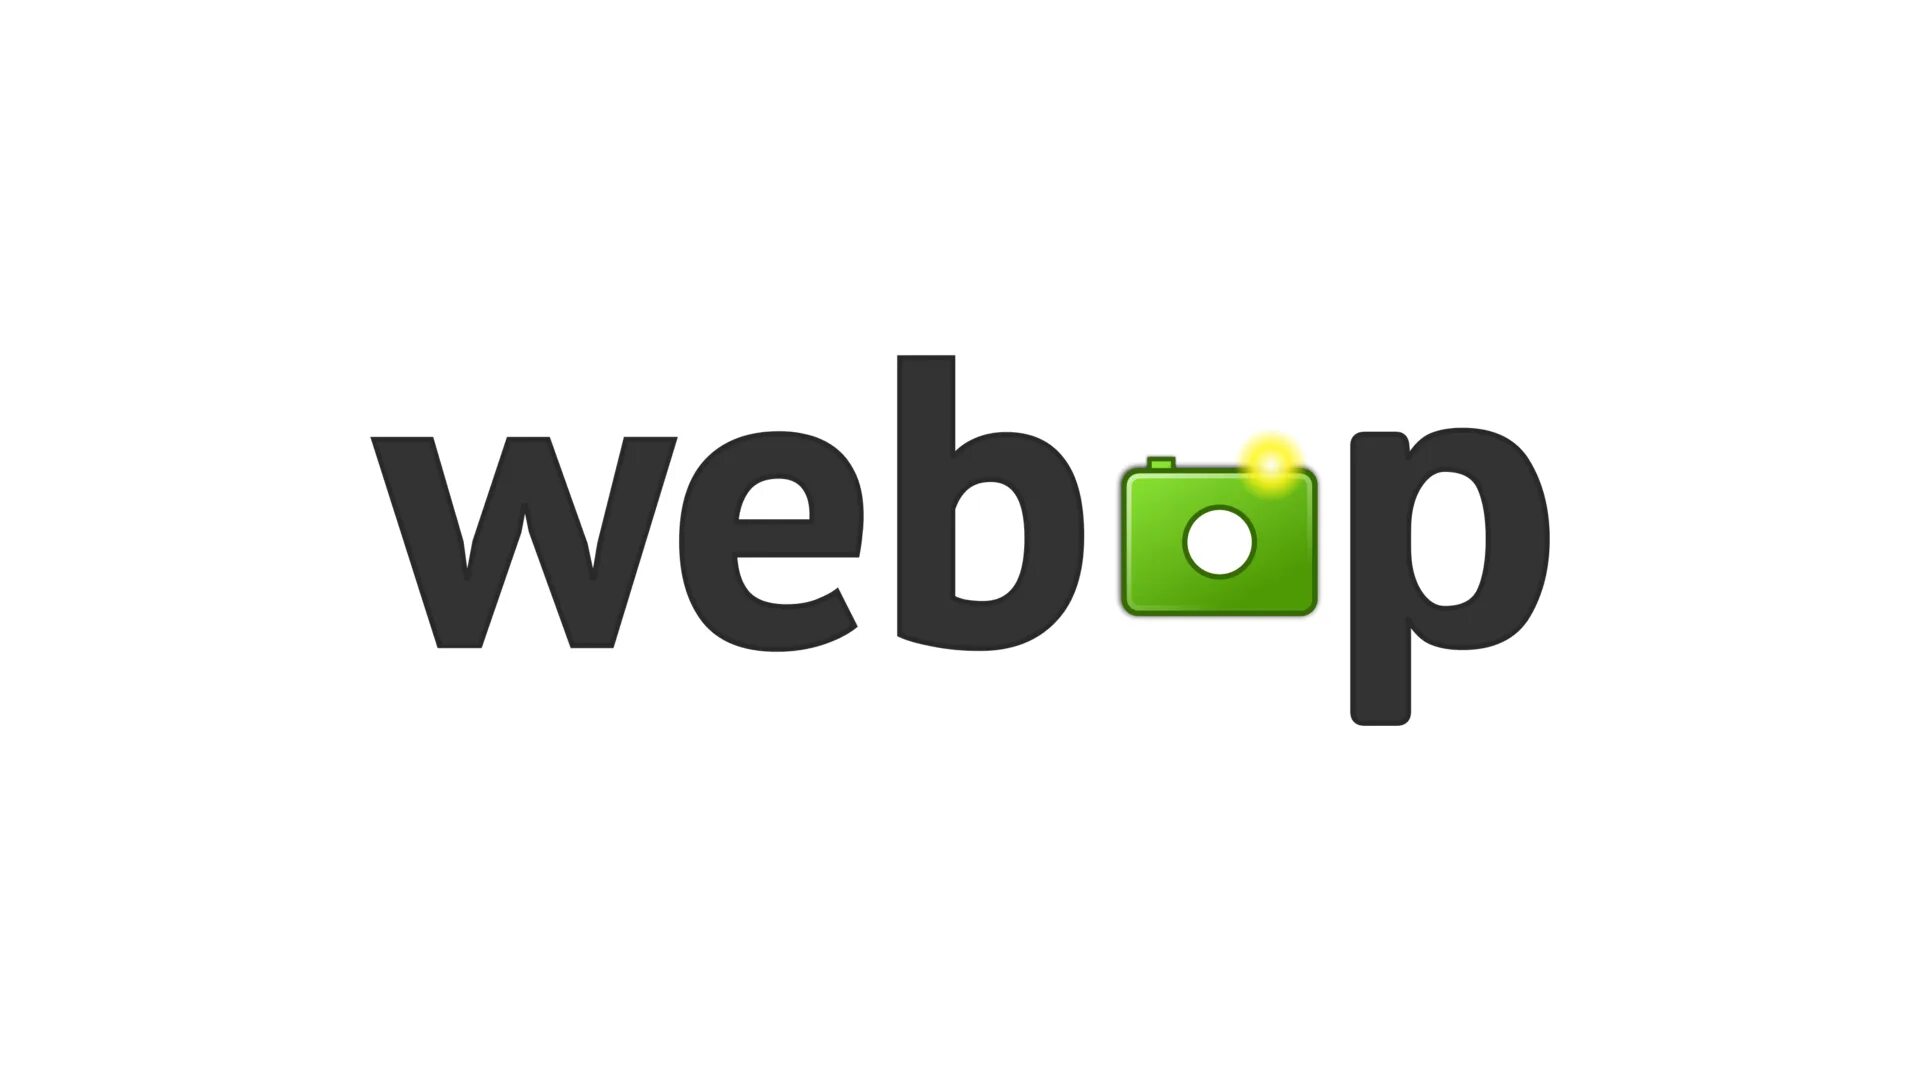 Webp. Webp картинки. Файл webp. Картинки в формате webp. Webp без потери качества